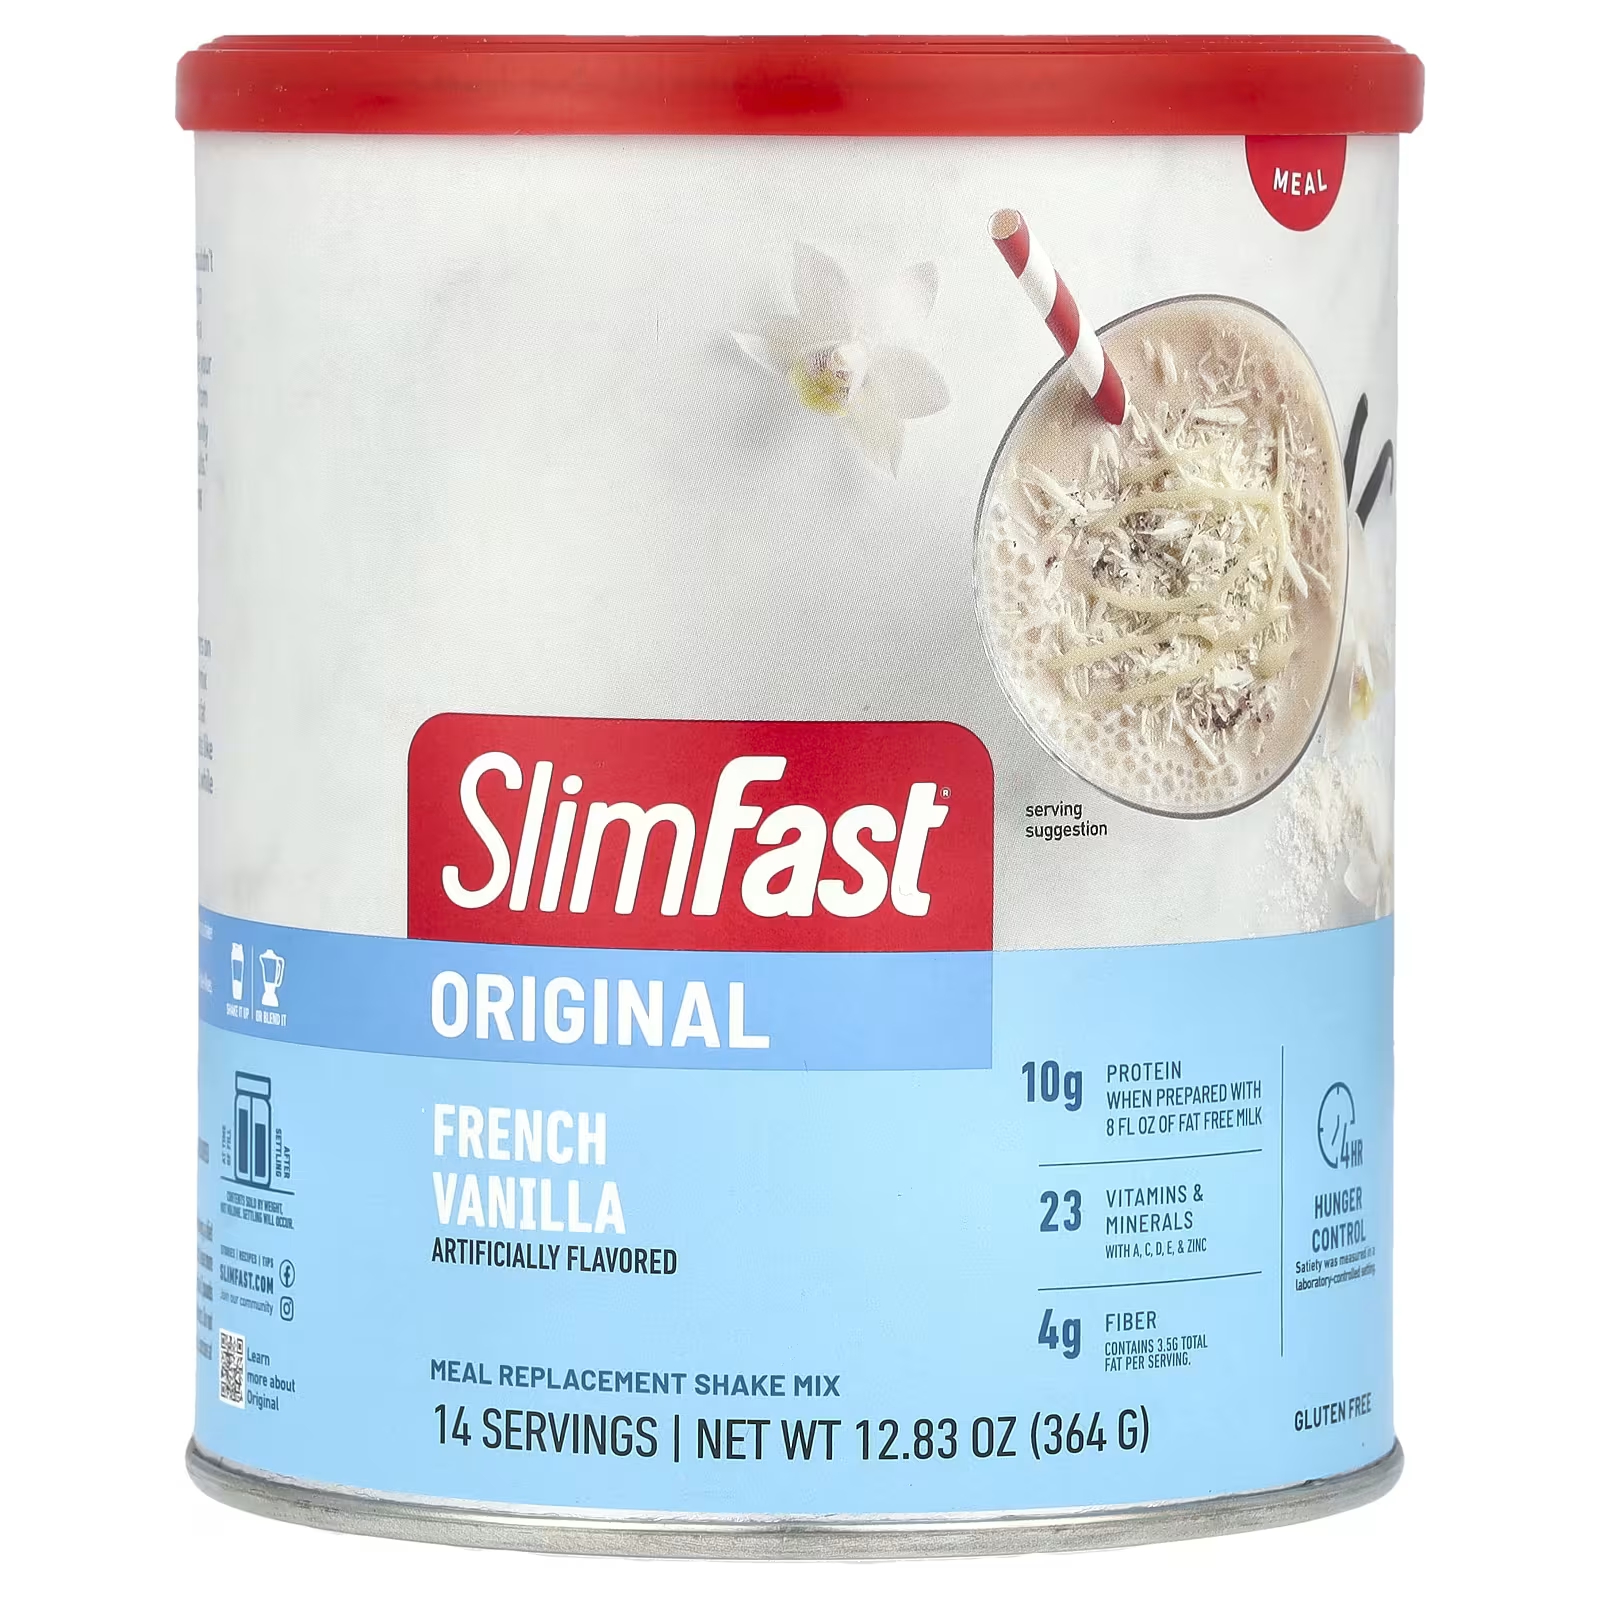 Смесь для замены еды SlimFast Original французская ваниль, 364 г